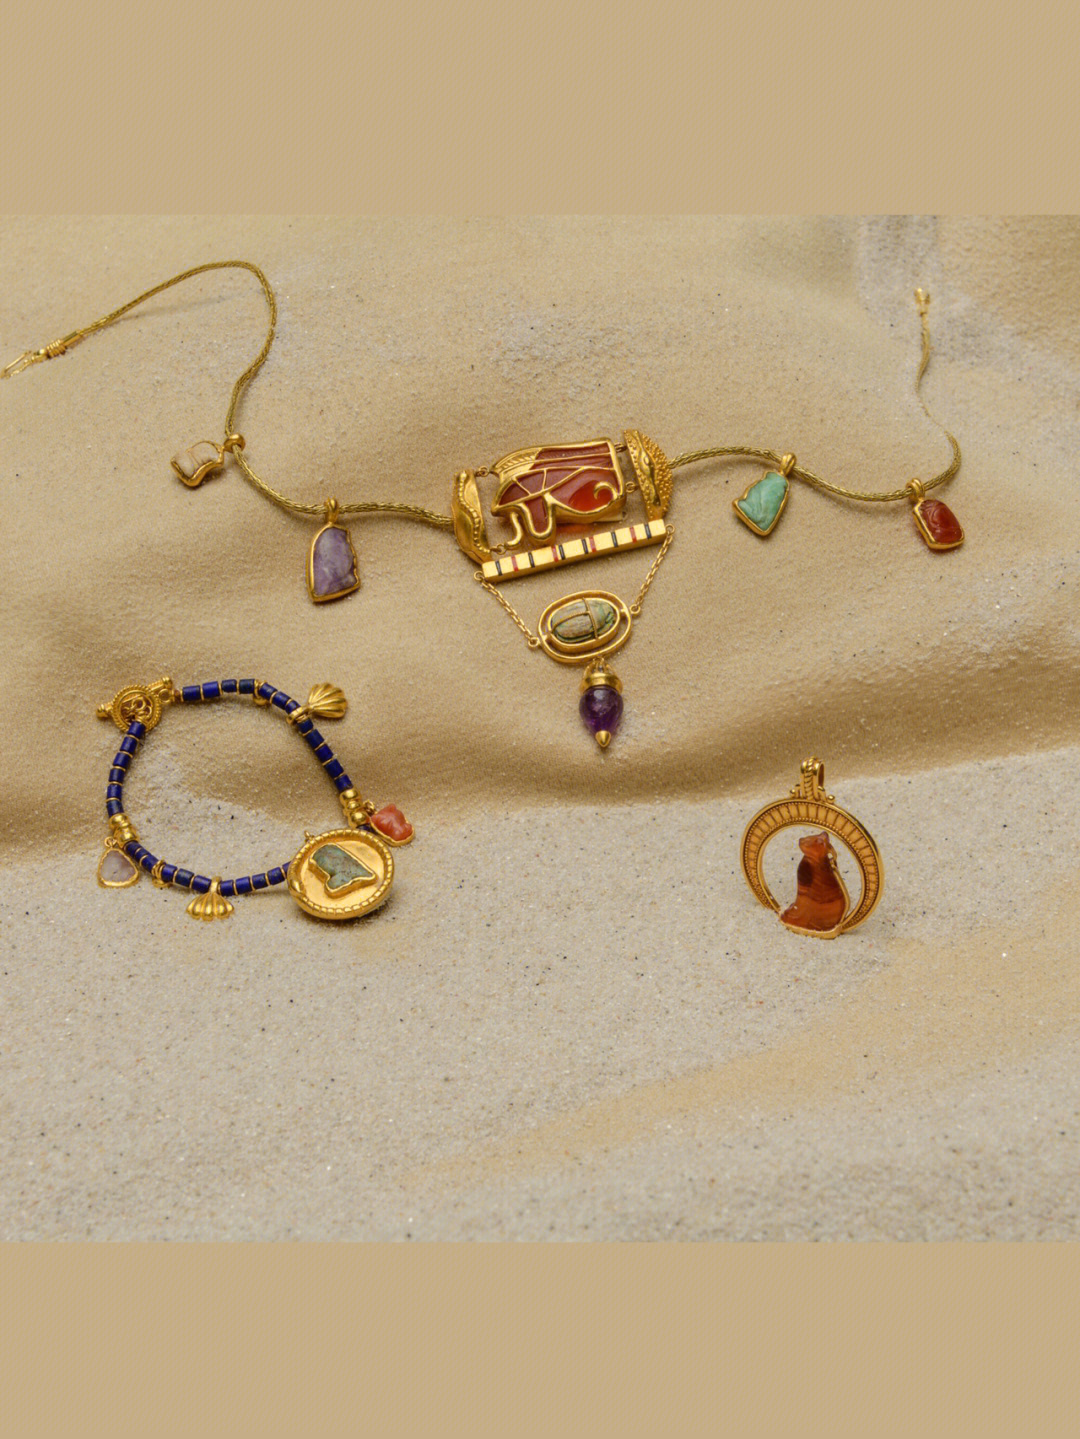 埃及宝石品种图片